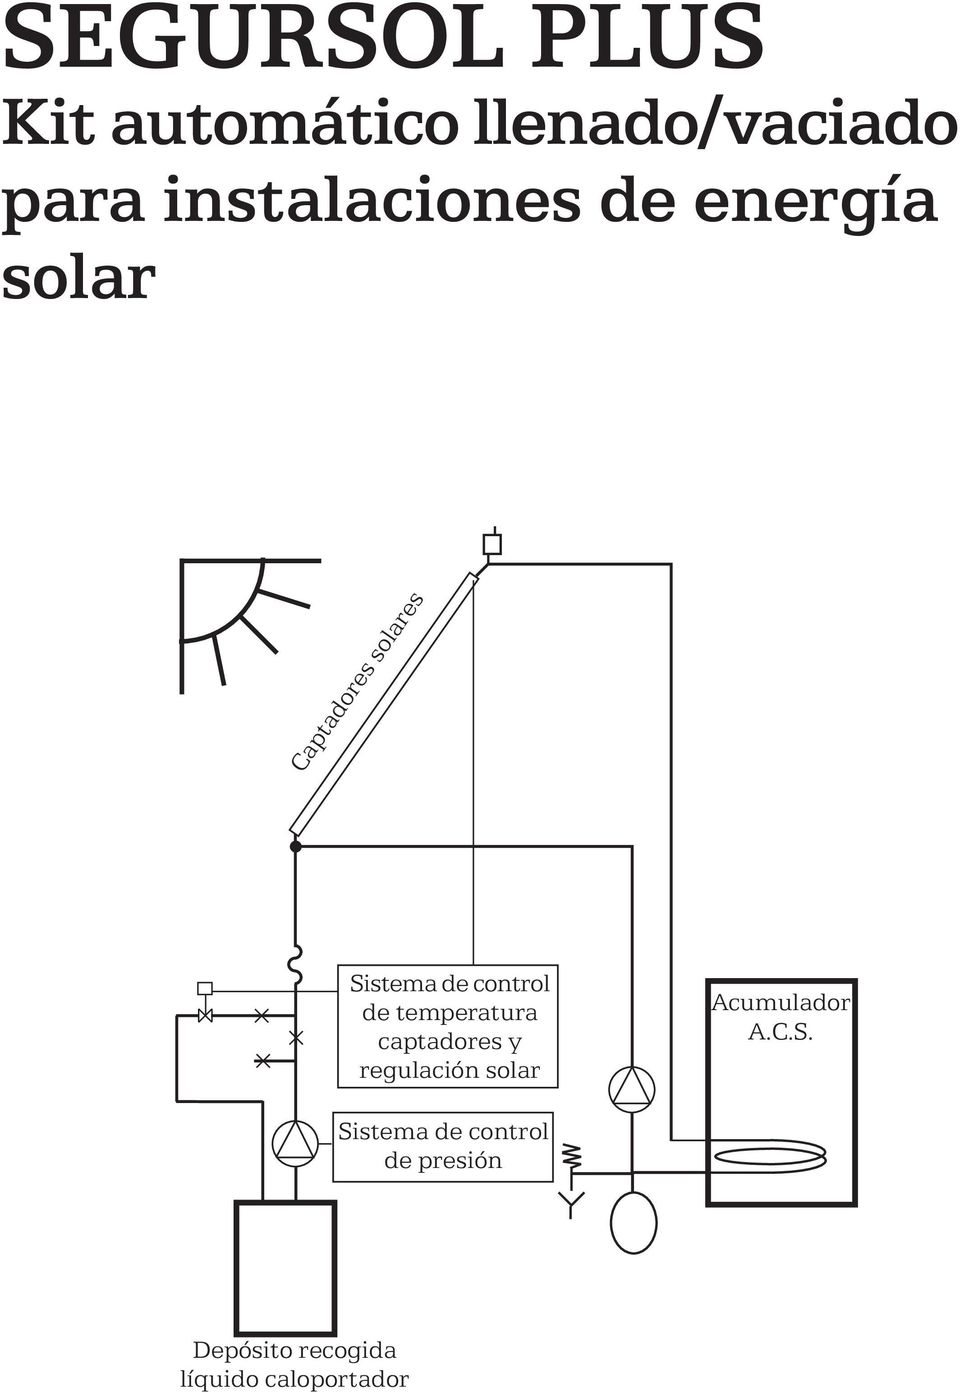 control de temperatura captadores y regulación solar